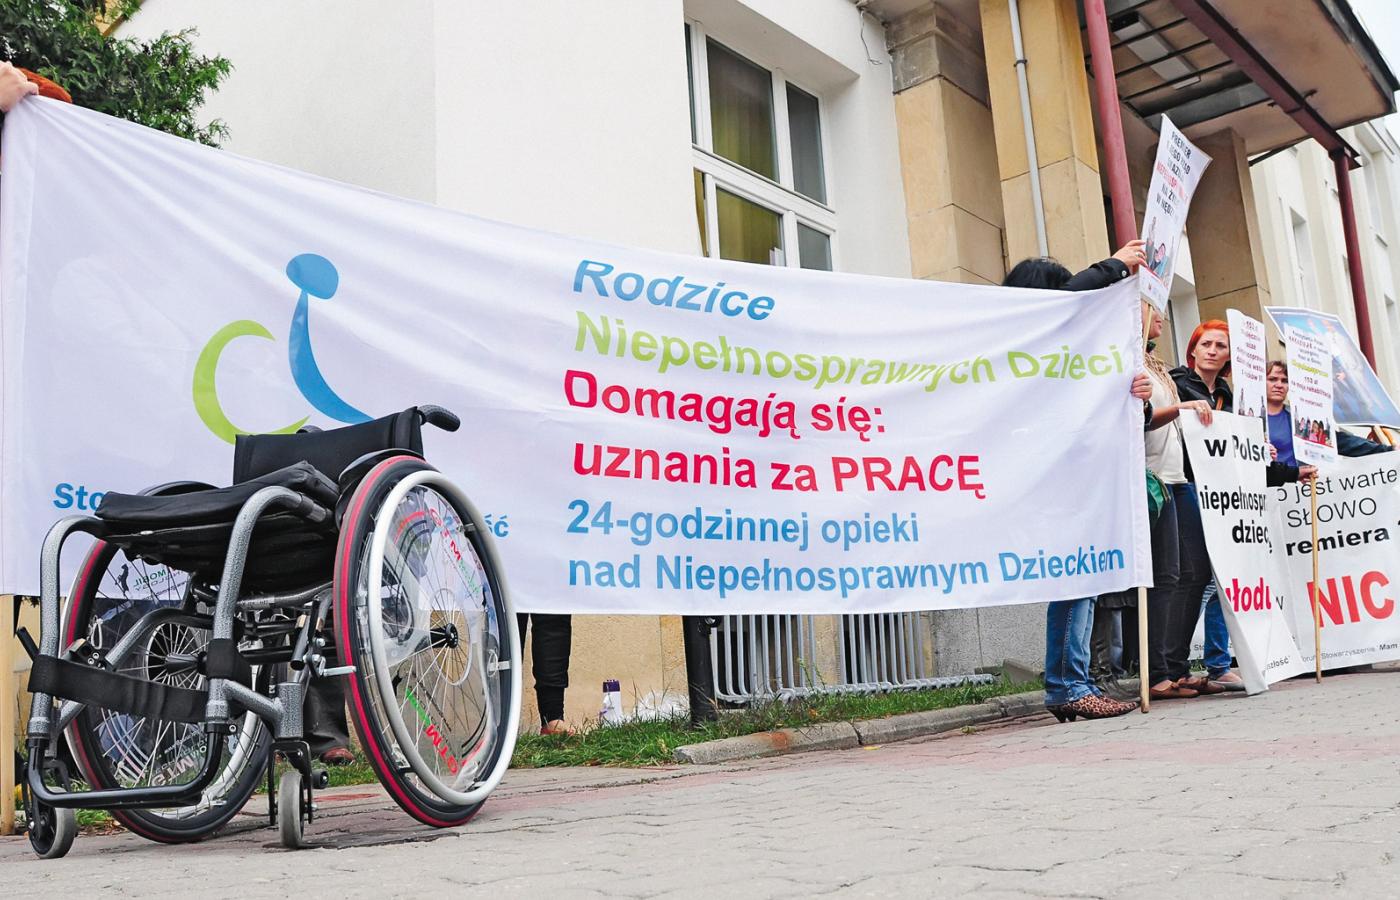 Toruński protest rodziców dzieci niepełnosprawnych (wrzesień 2012 r.), m.in. w sprawie niskich świadczeń pielęgnacyjnych.